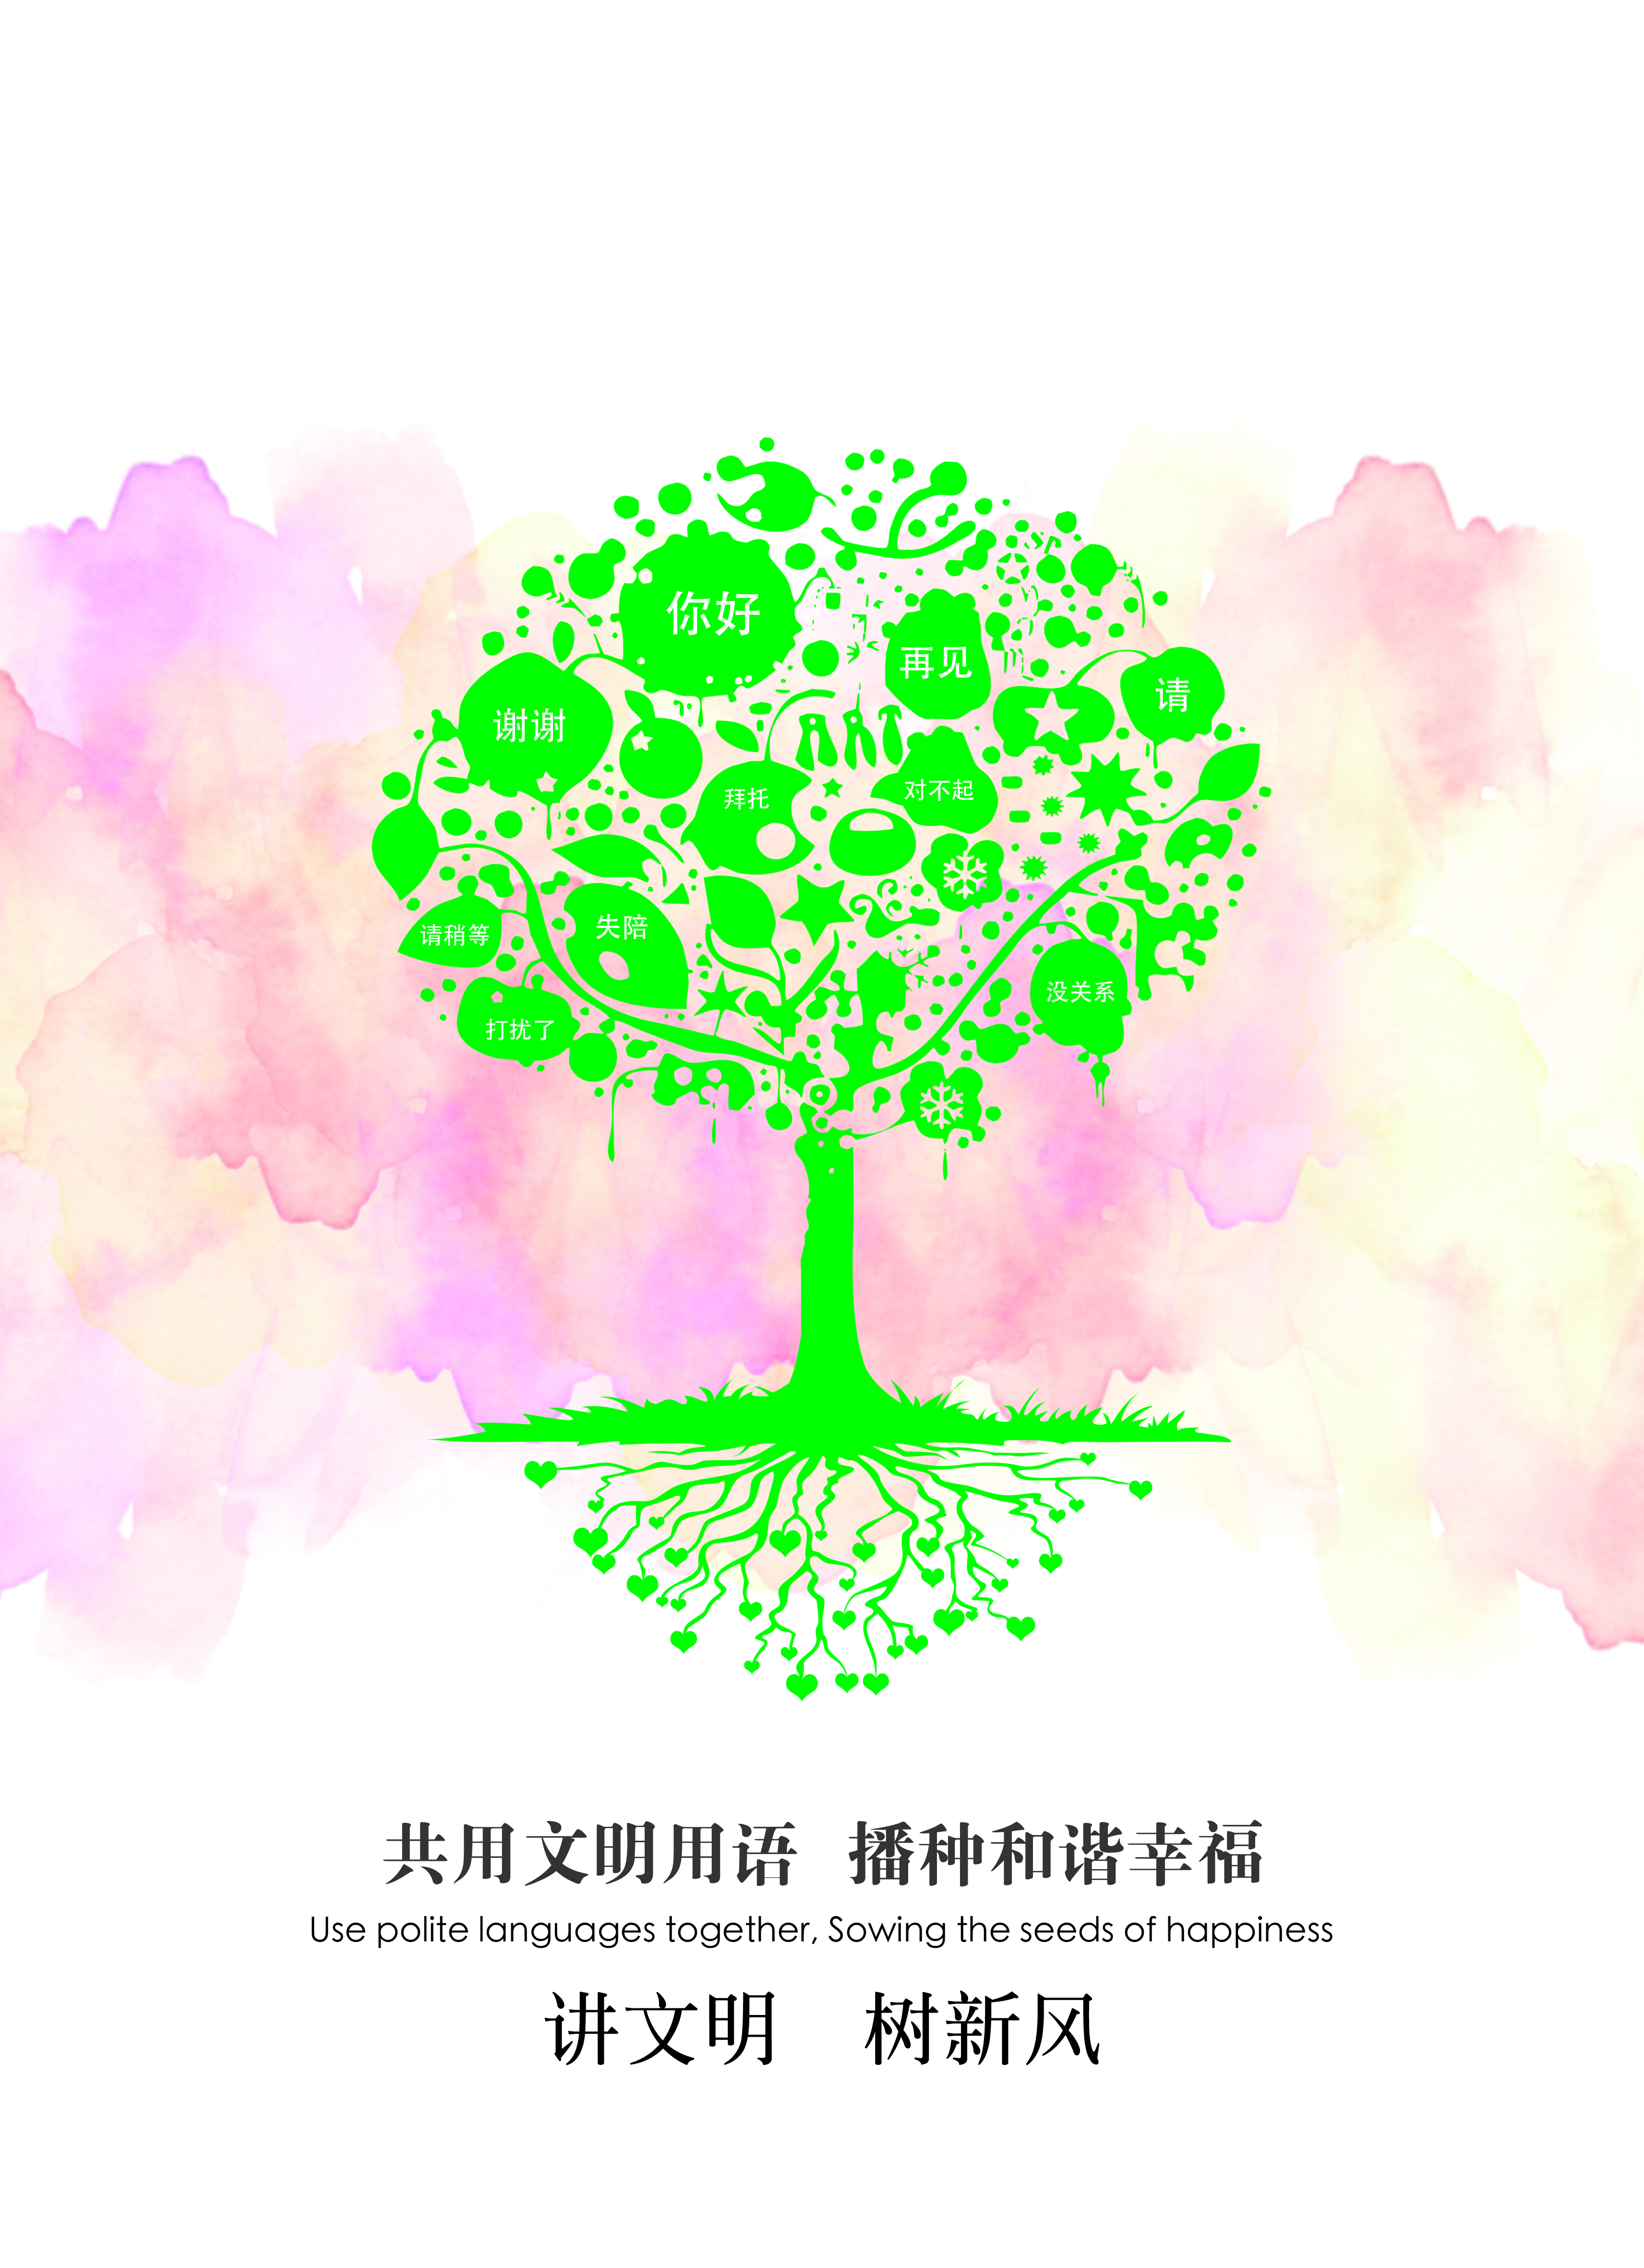 2013年公益广告文明用语系列-大树篇rgb.jpg